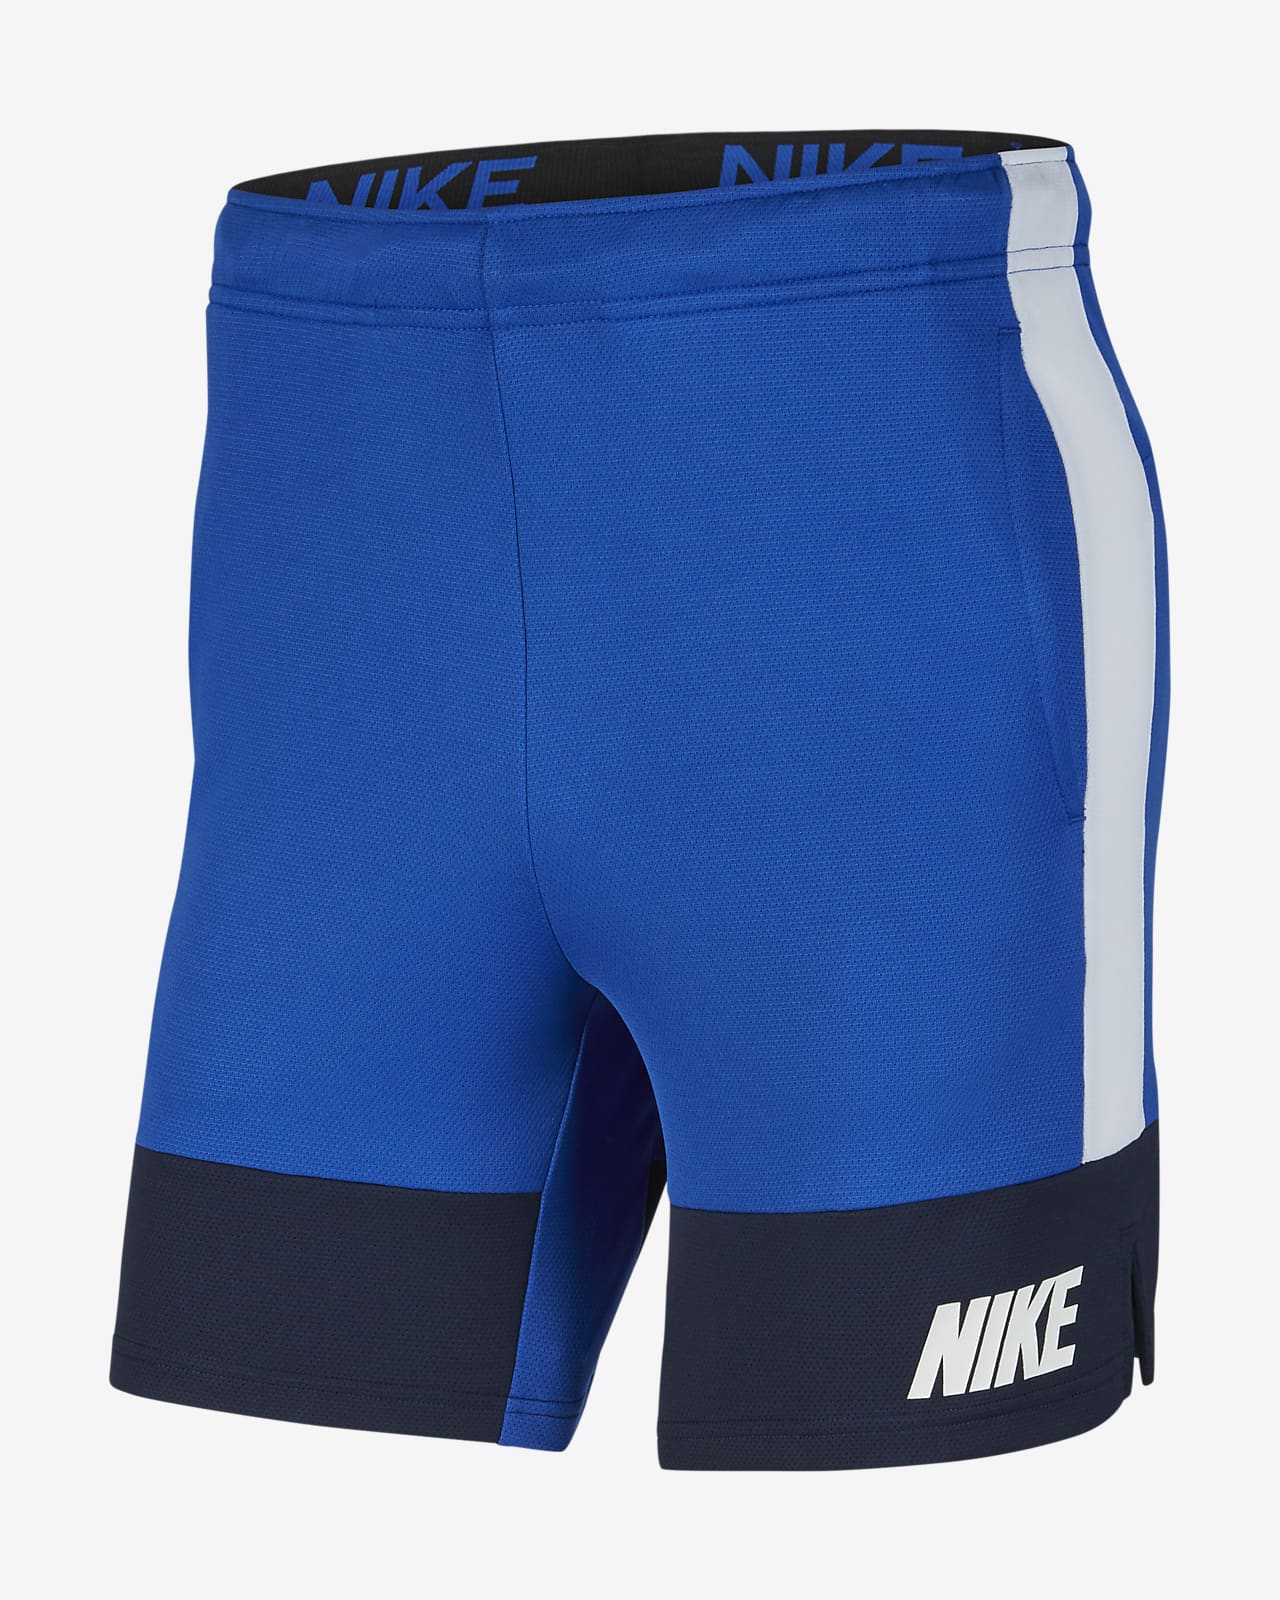 Nike Dri-FIT Men's Training Shorts. Nike SG